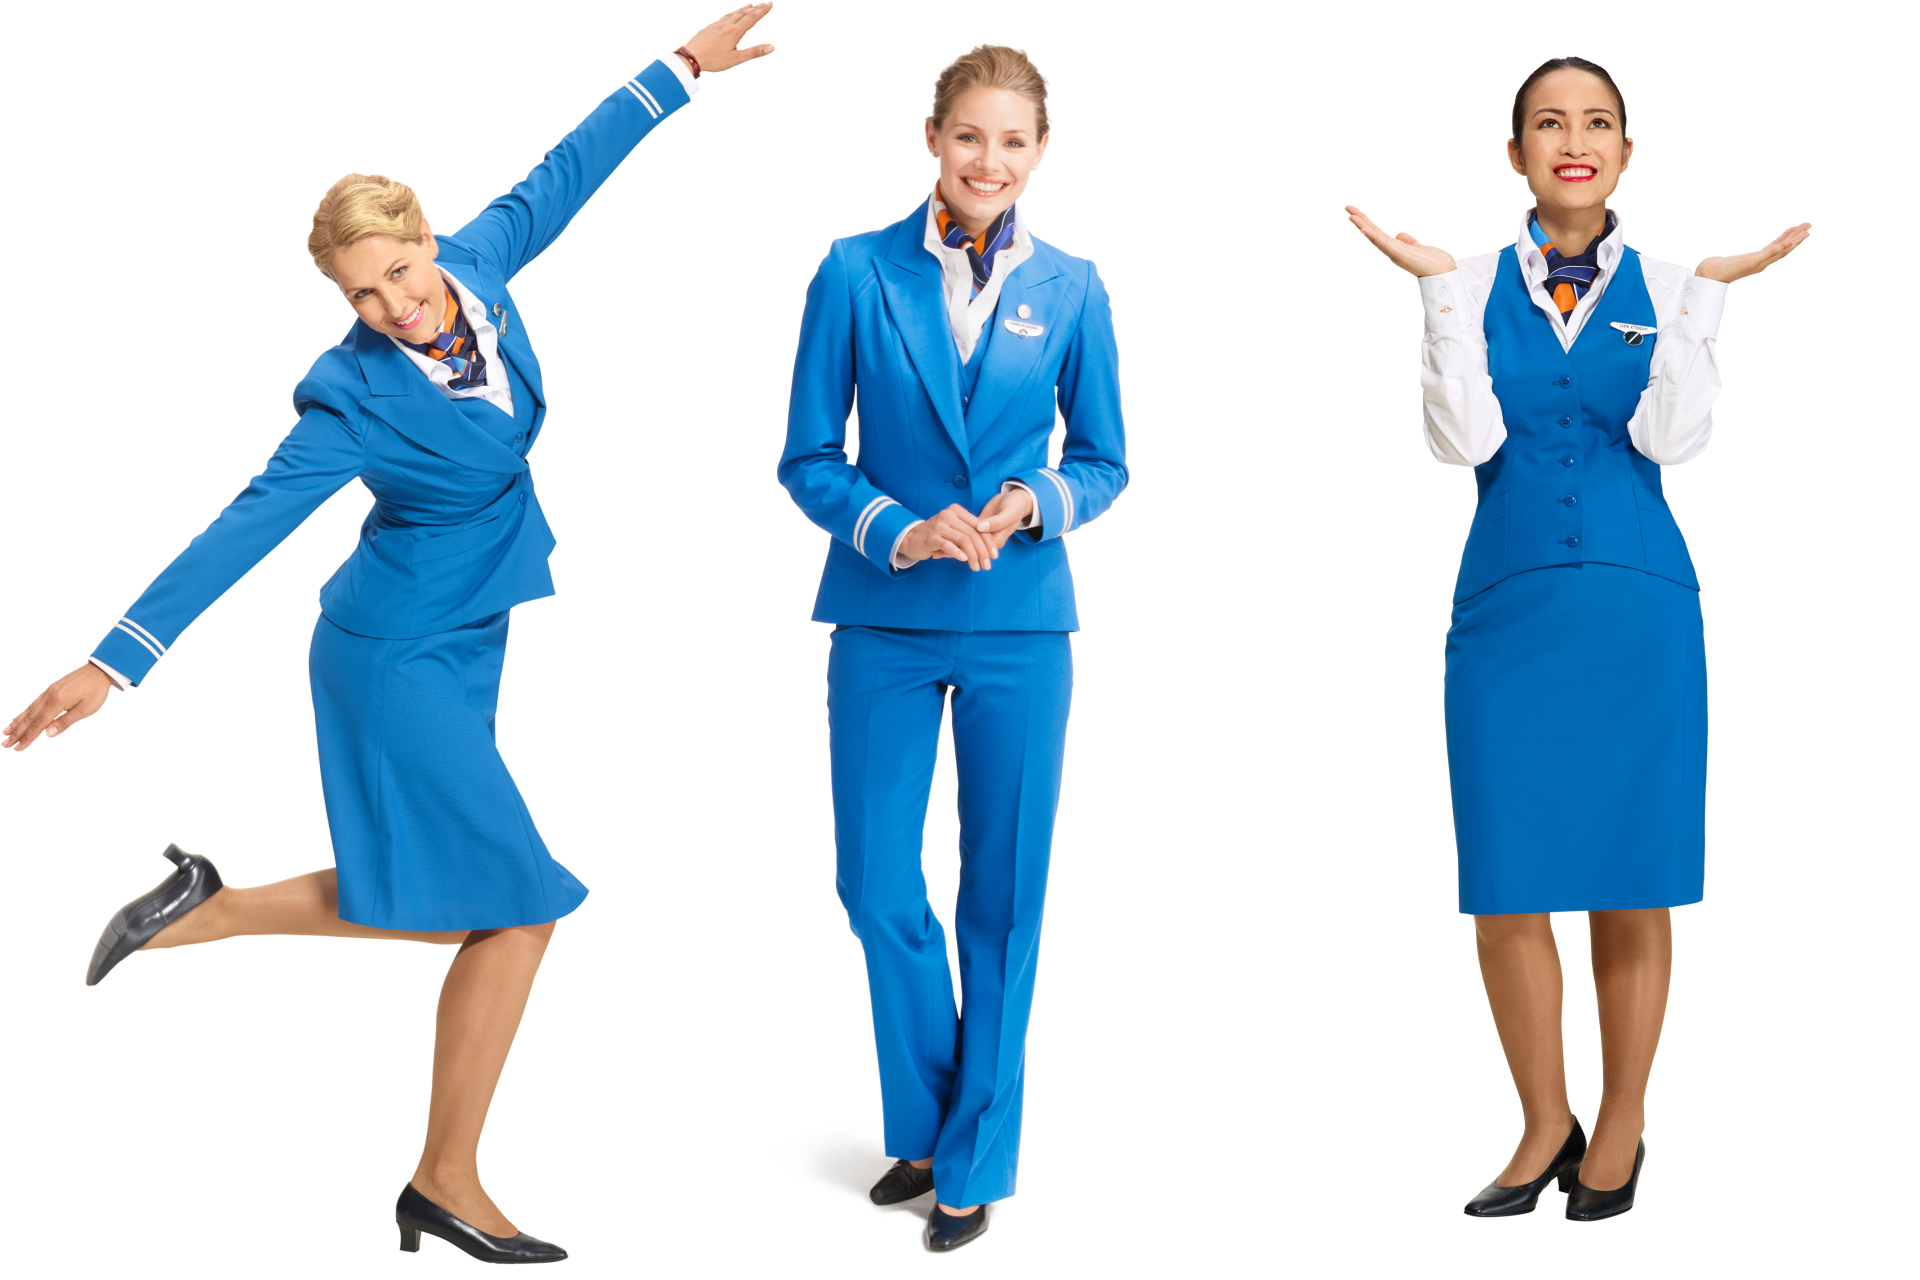 Bedachtzaam Leven van Compatibel met Ins & Outs of the KLM Uniform - KLM Blog